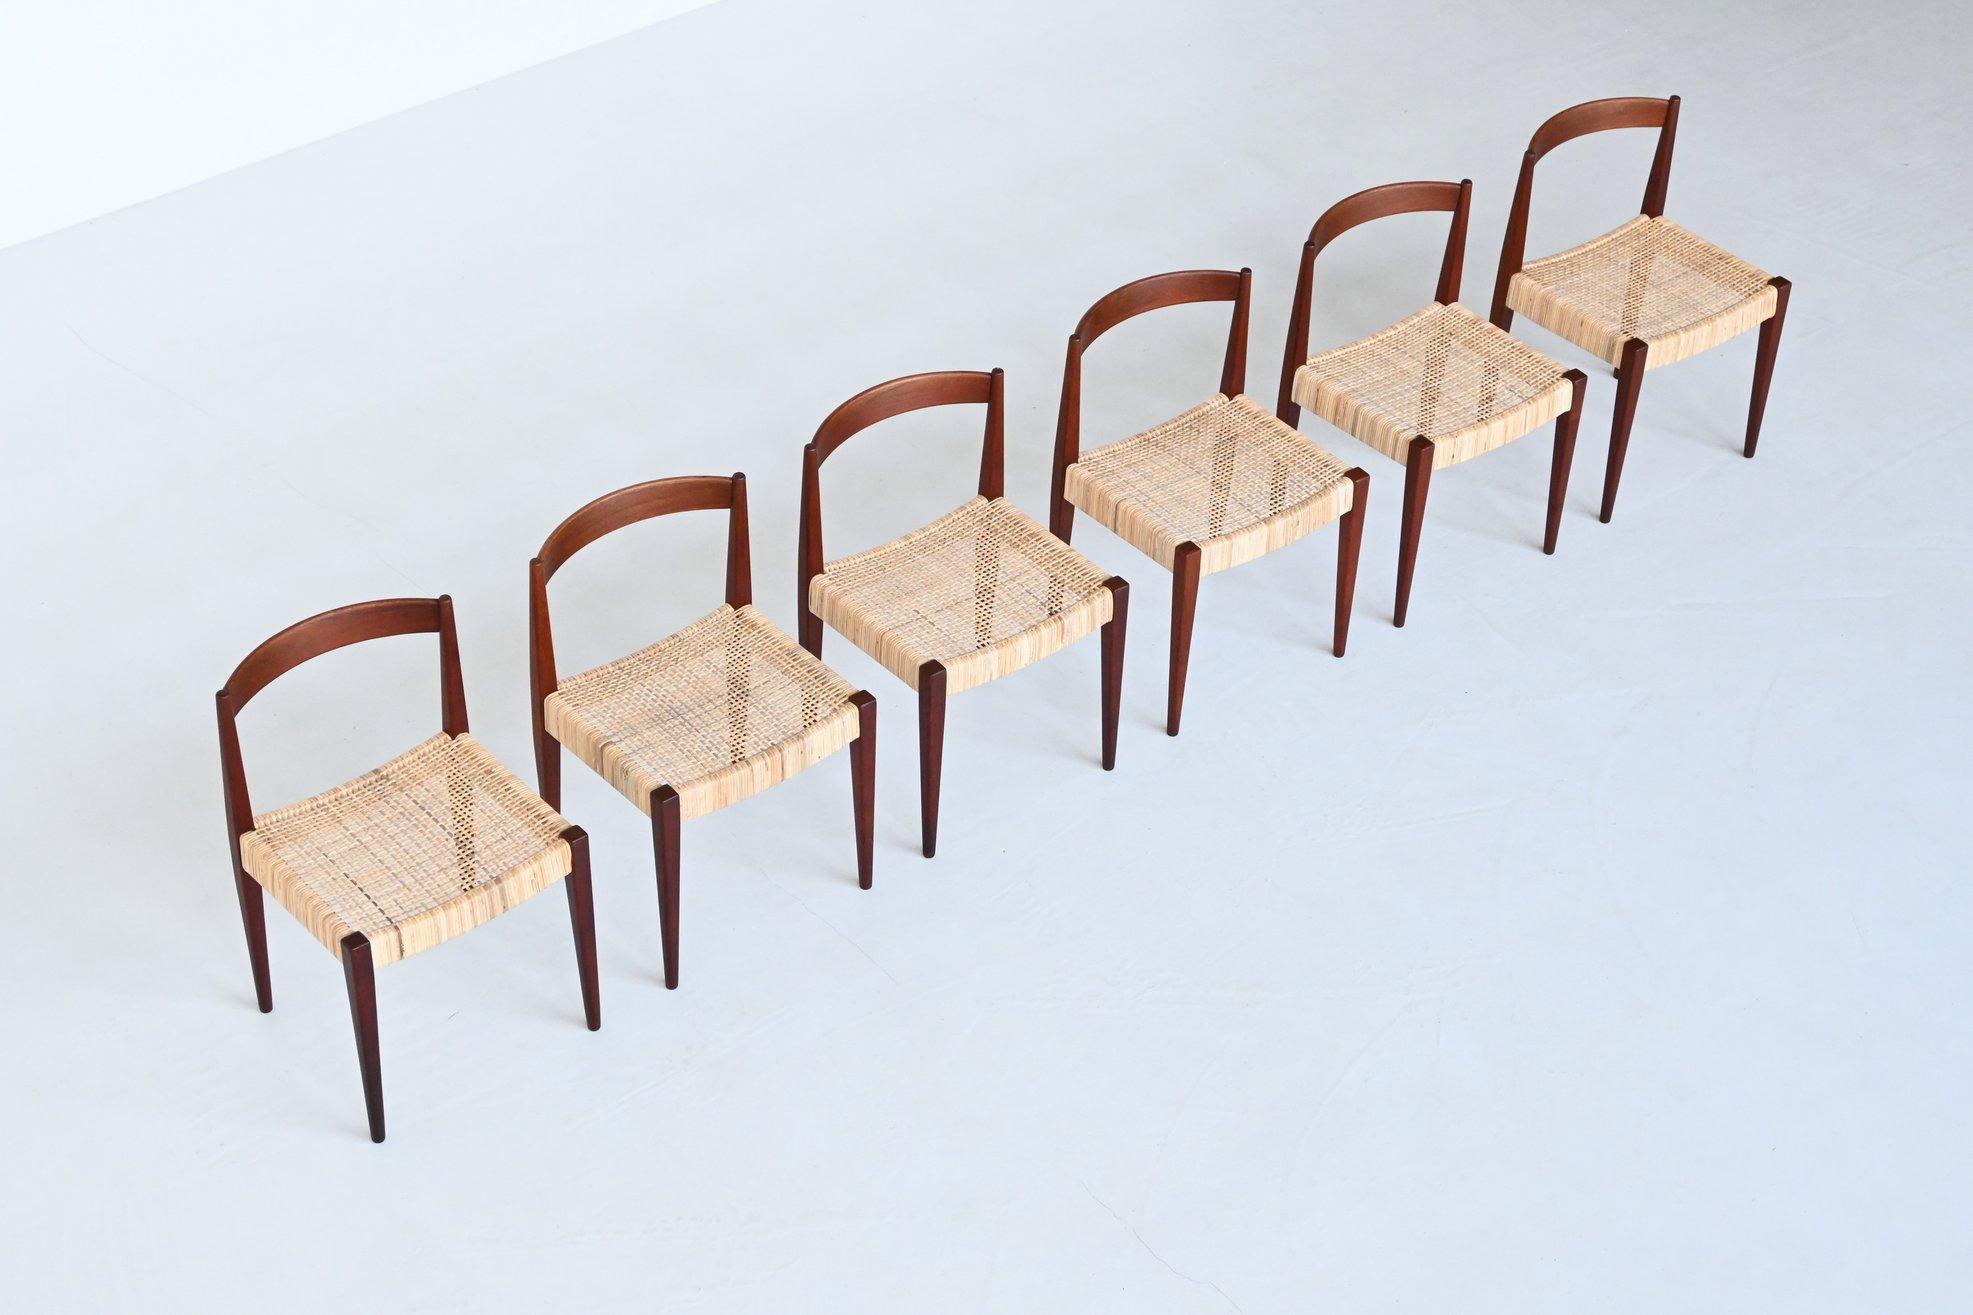 Schöner Satz von sechs Esszimmerstühlen Modell 113, entworfen von Nanna & Jørgen Ditzel für Poul Kolds Savvaerk, Dänemark 1955. Dieser Esszimmerstuhl hat ein Gestell aus massivem Teakholz mit einem Sitz aus geflochtenem Schilfrohr. Sie sind sehr